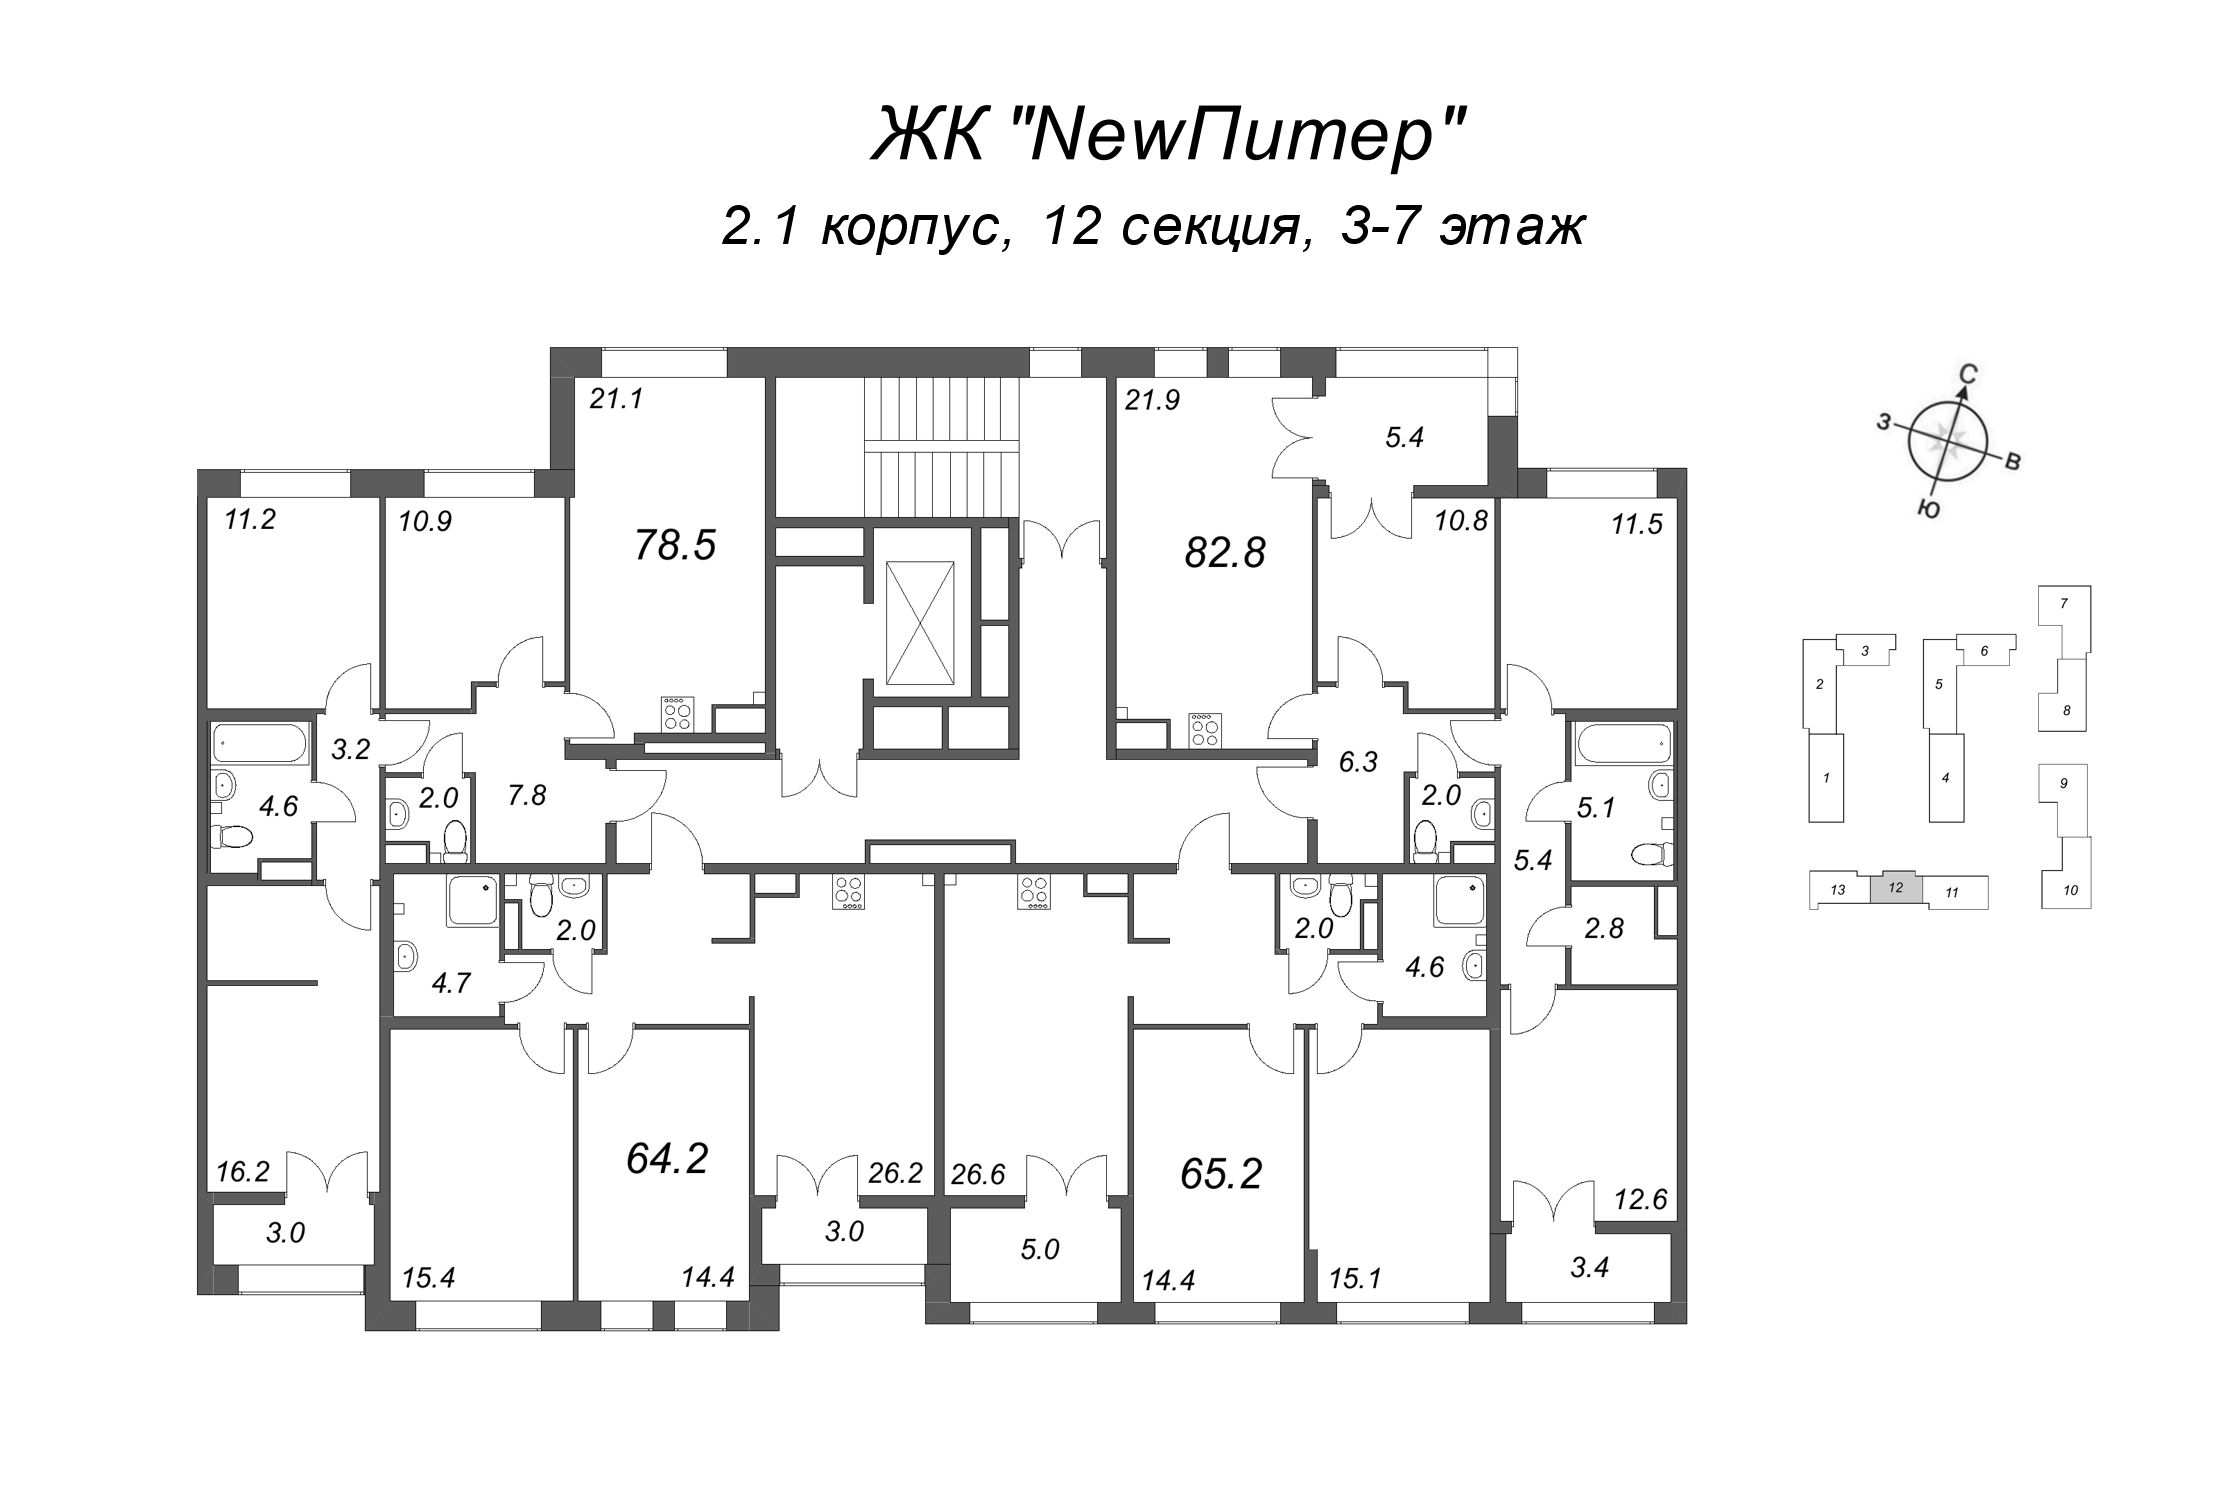 4-комнатная (Евро) квартира, 78.5 м² в ЖК "NewПитер 2.0" - планировка этажа